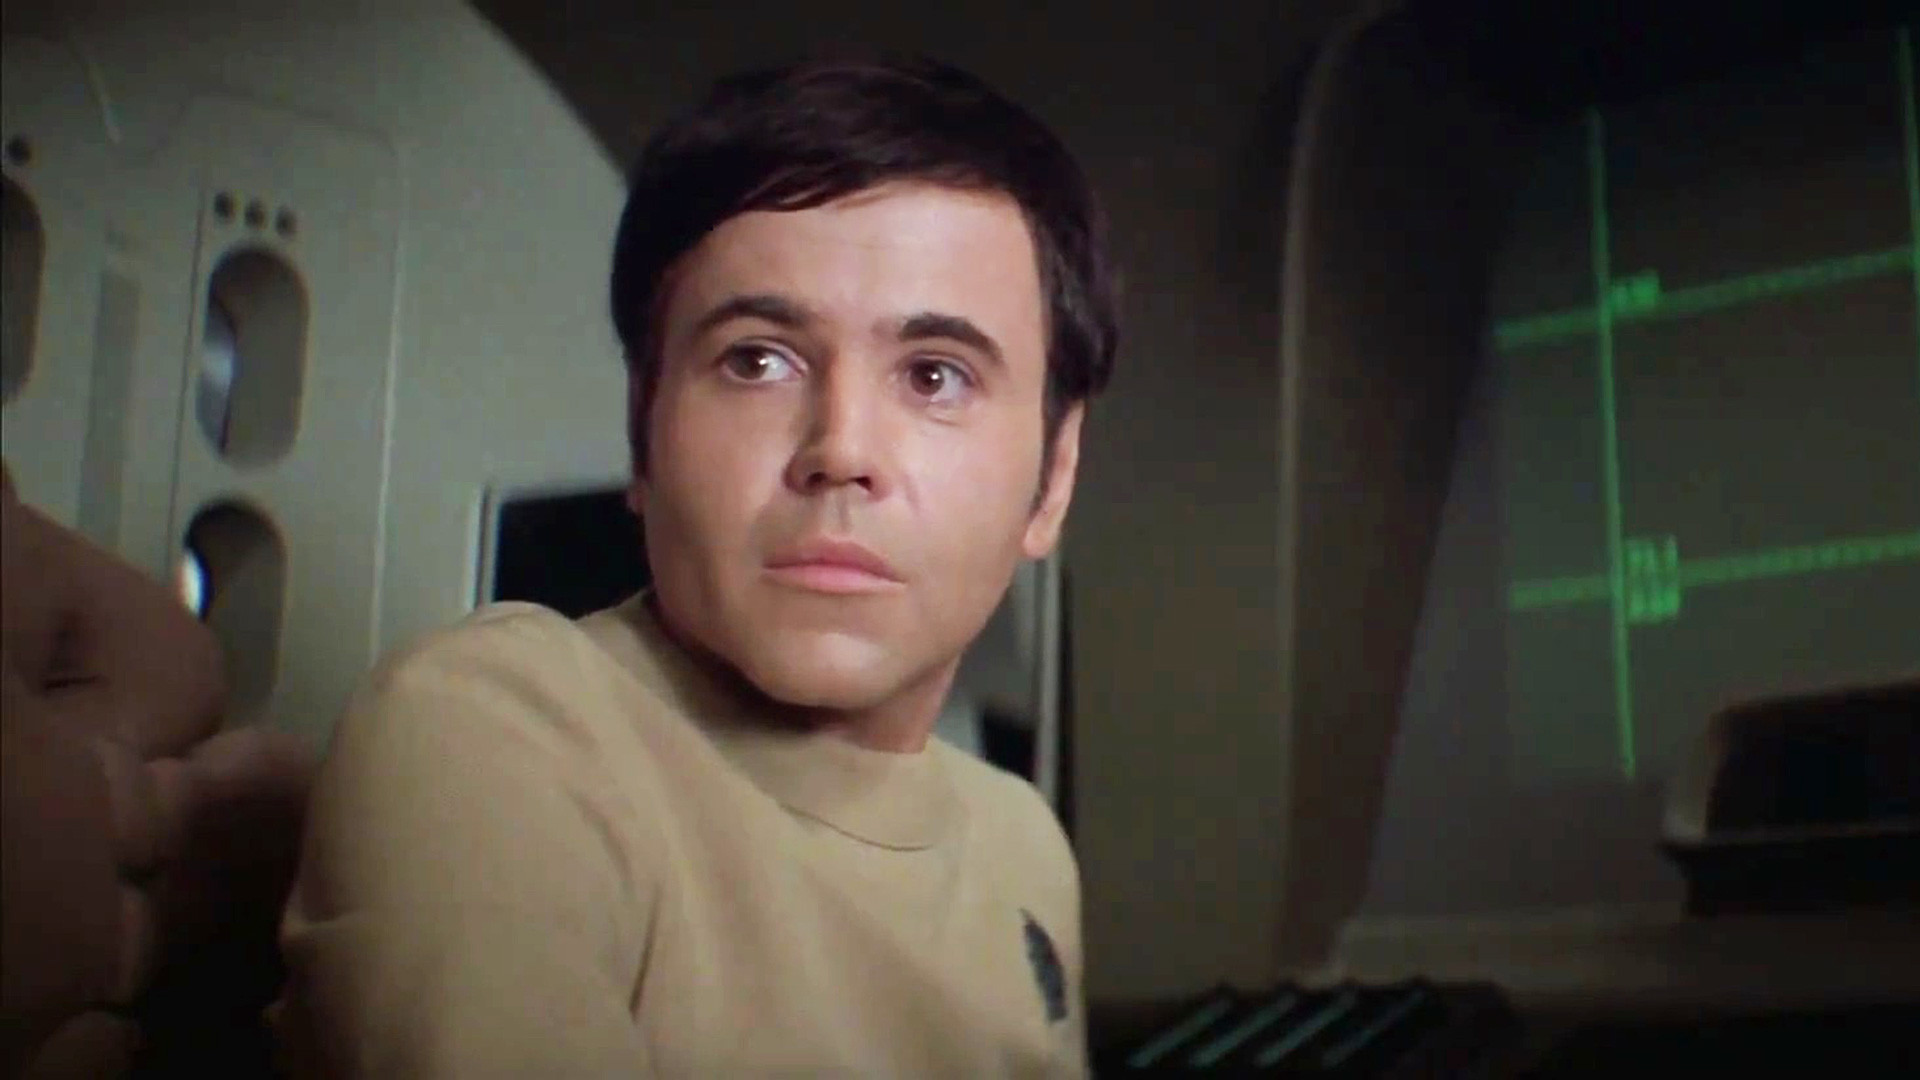 Pavel Chekov, Star Trek (1979)
